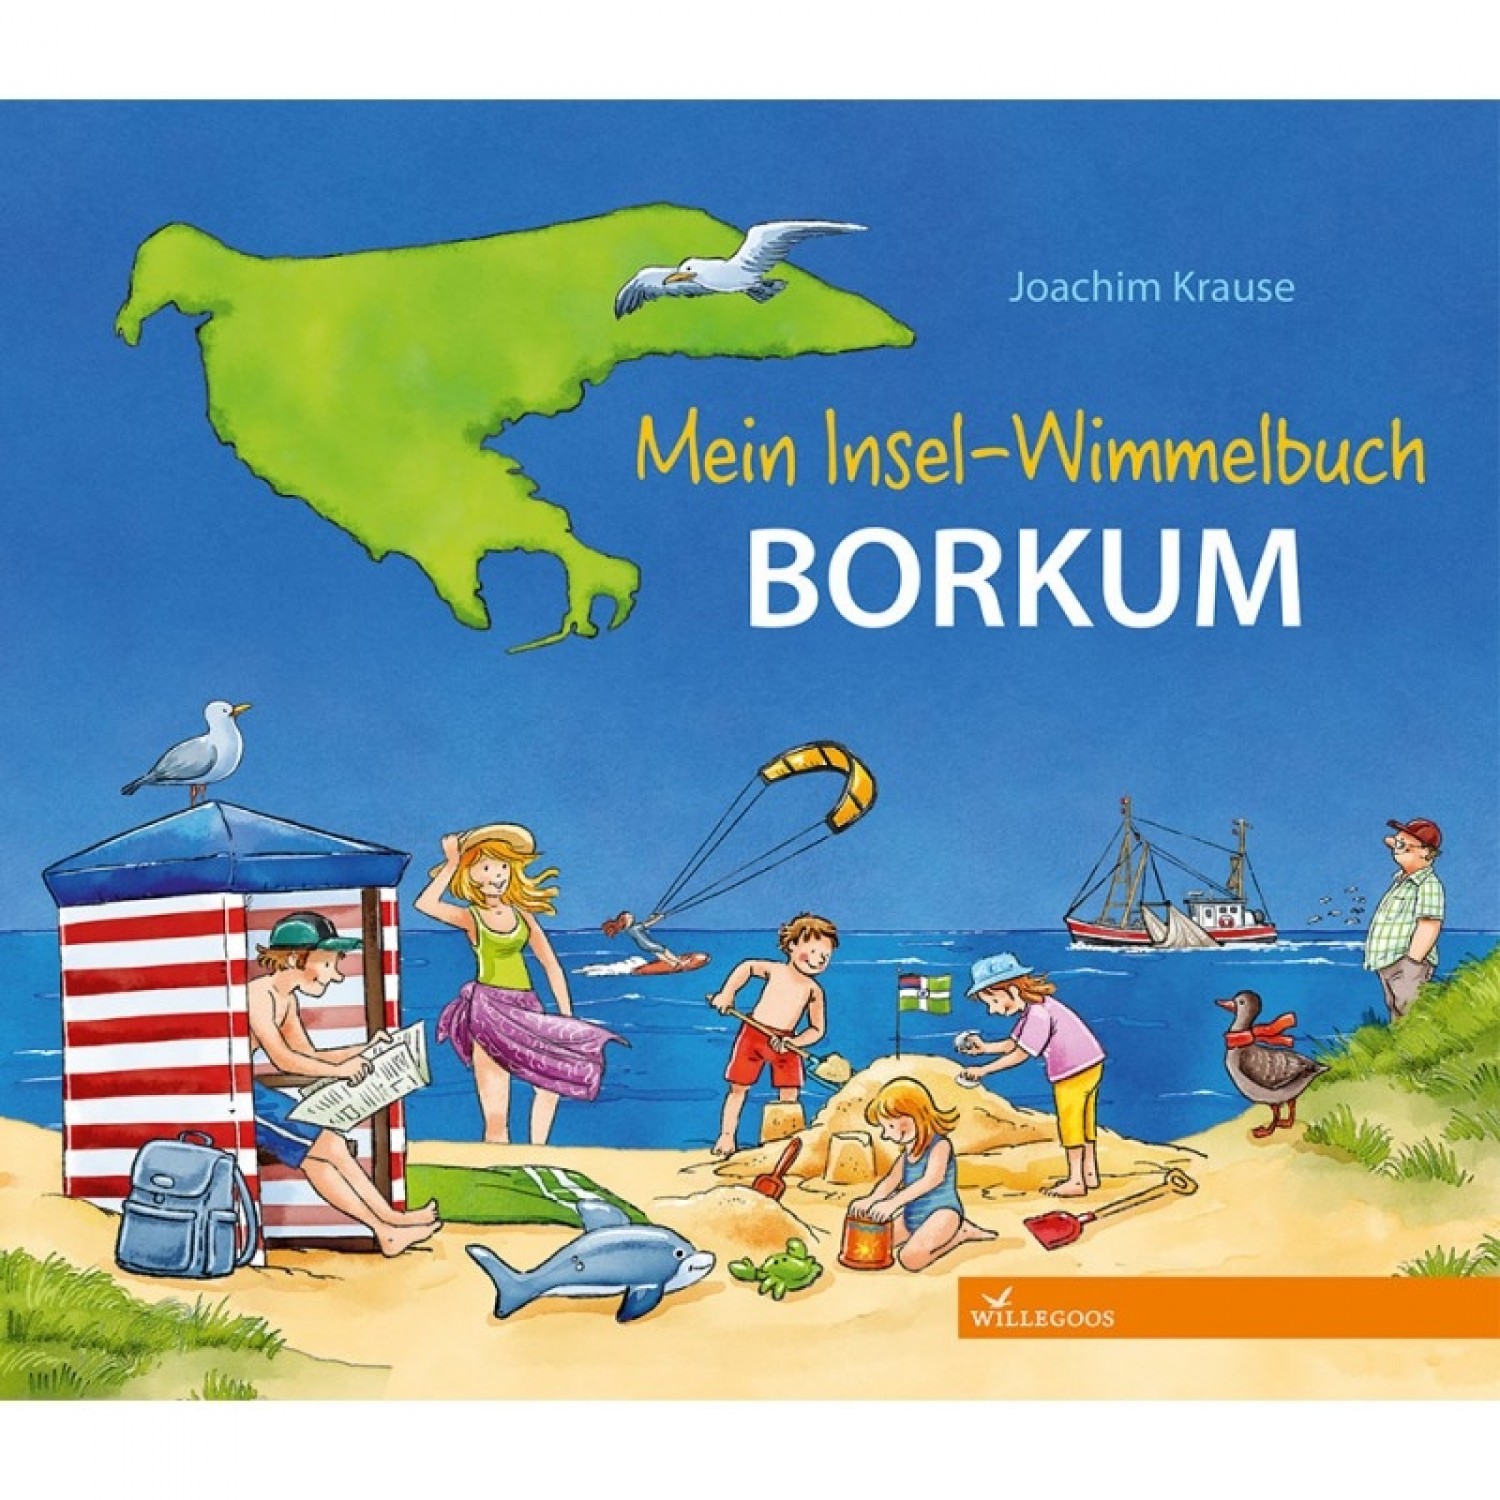 Discover Island Borkum - children’s picture book | Willegoos